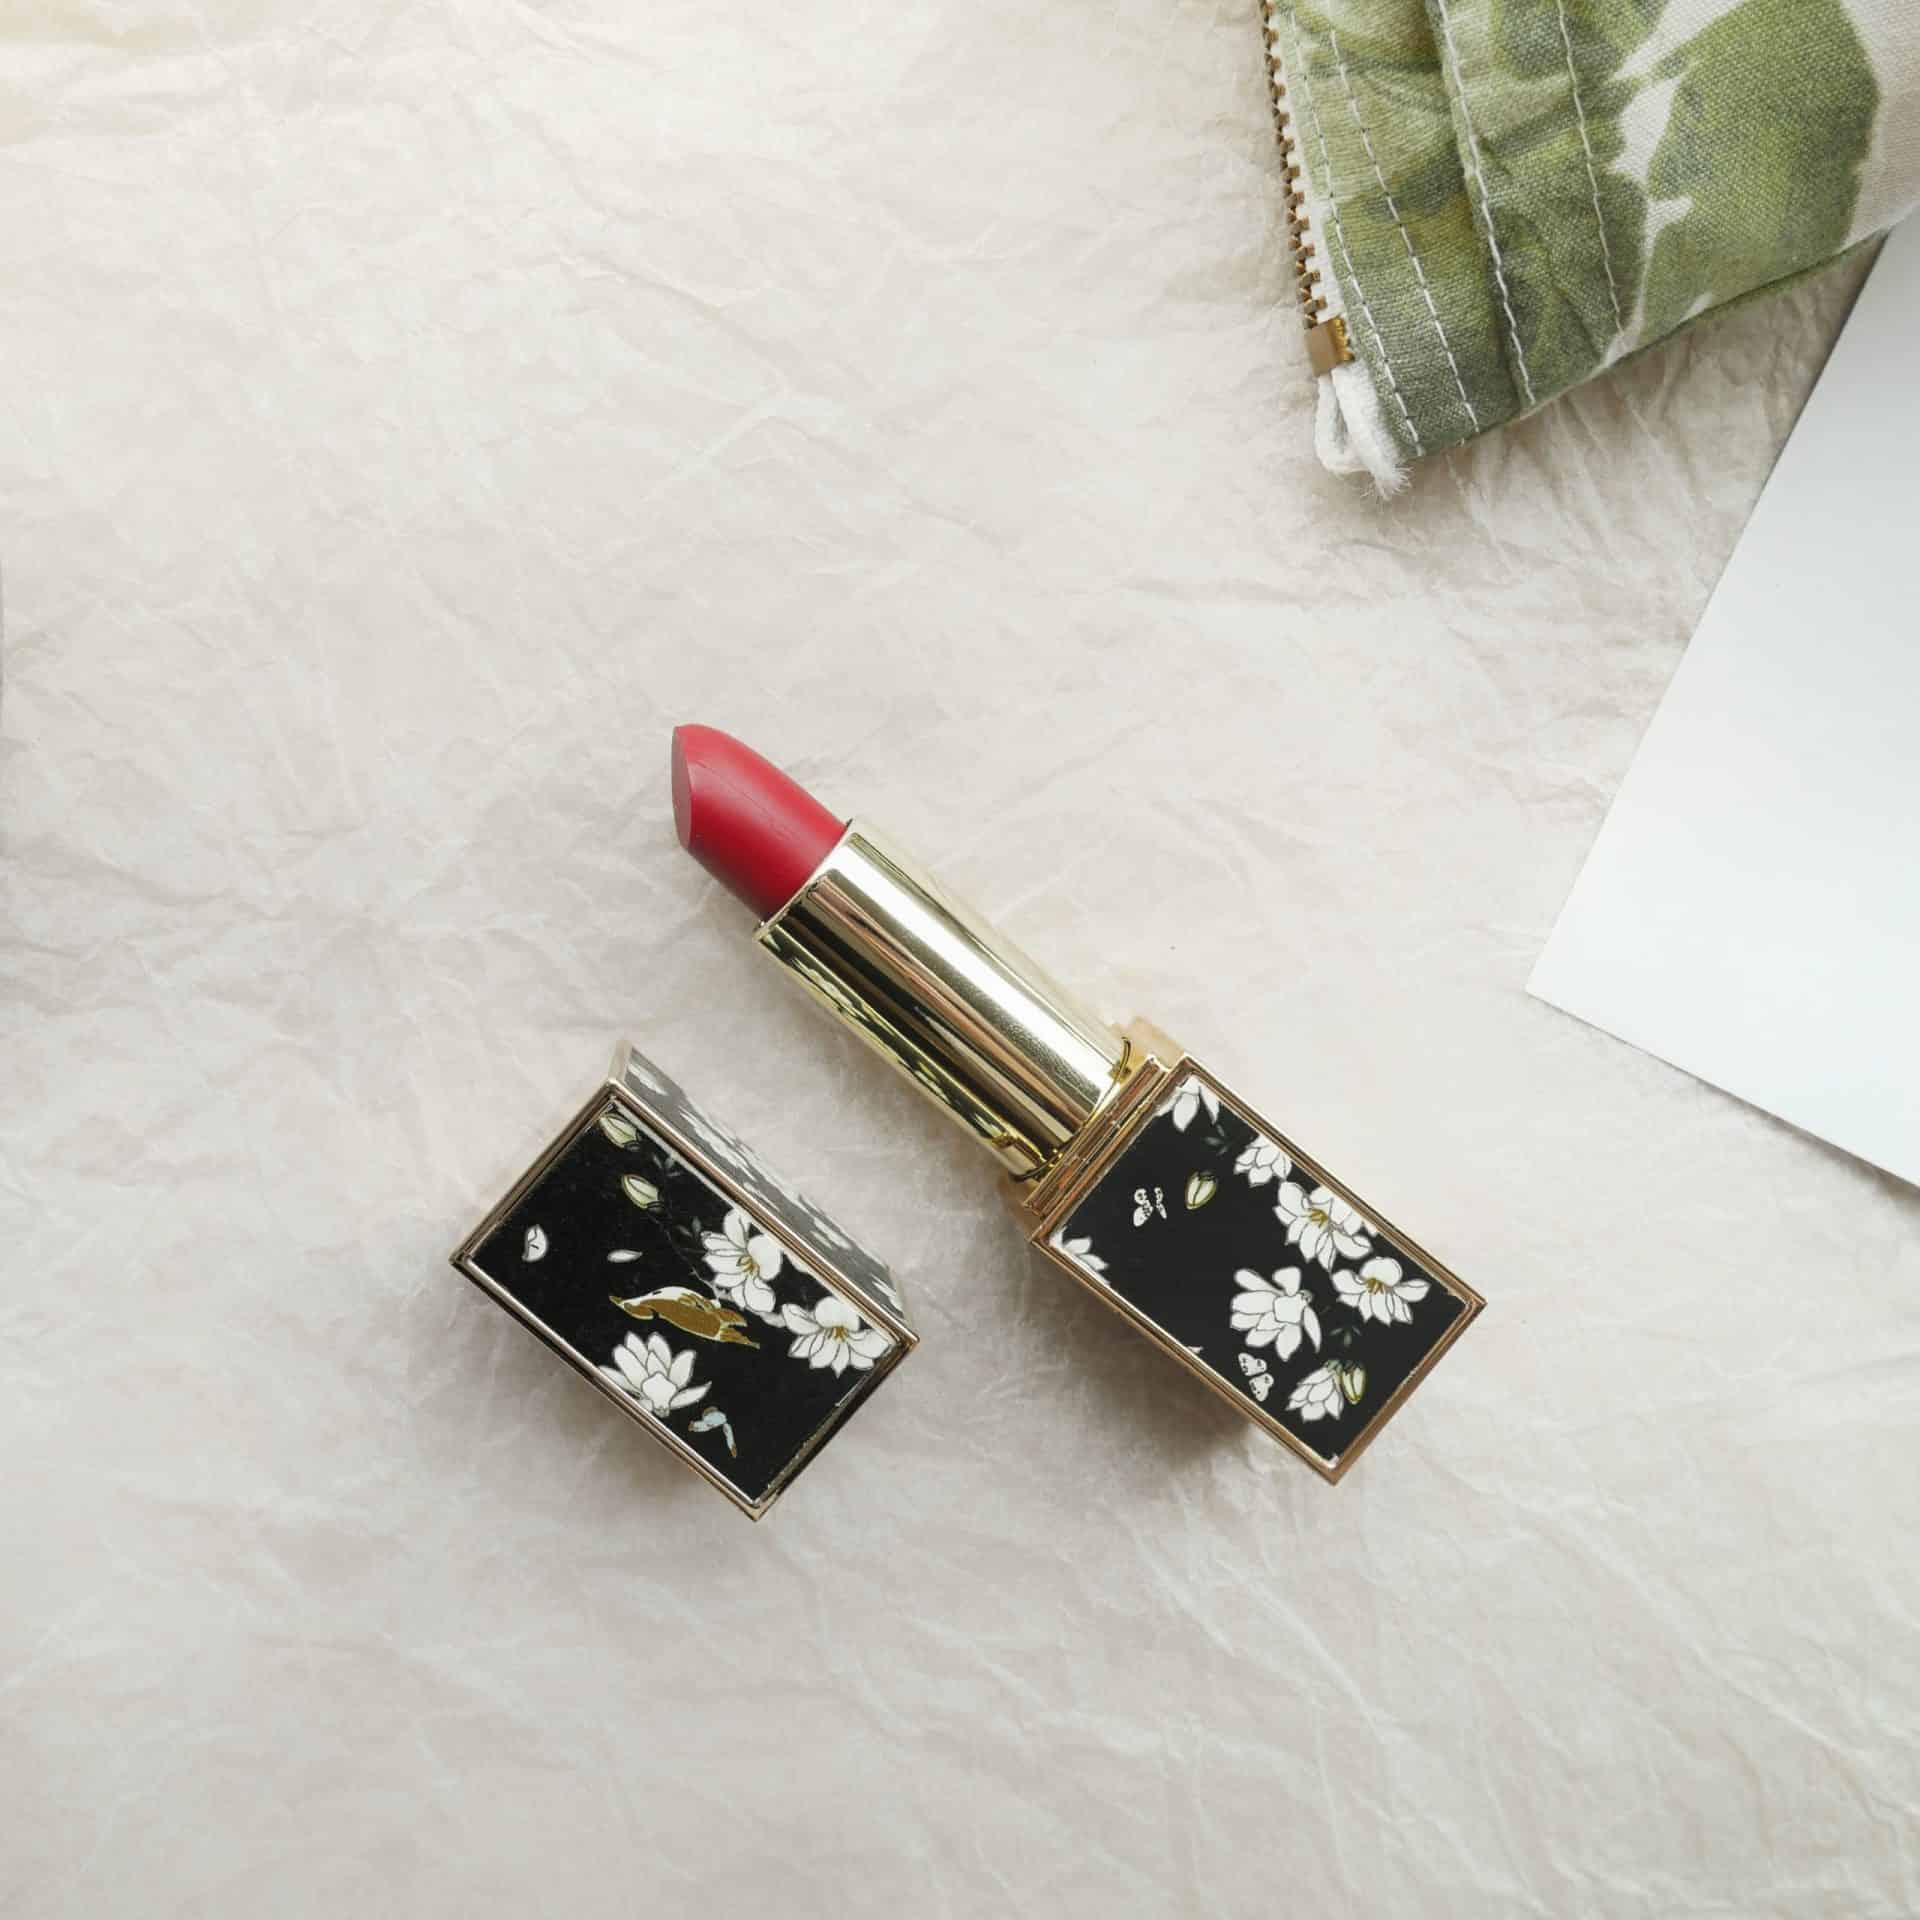 Customised Lipstick - Black Flowers